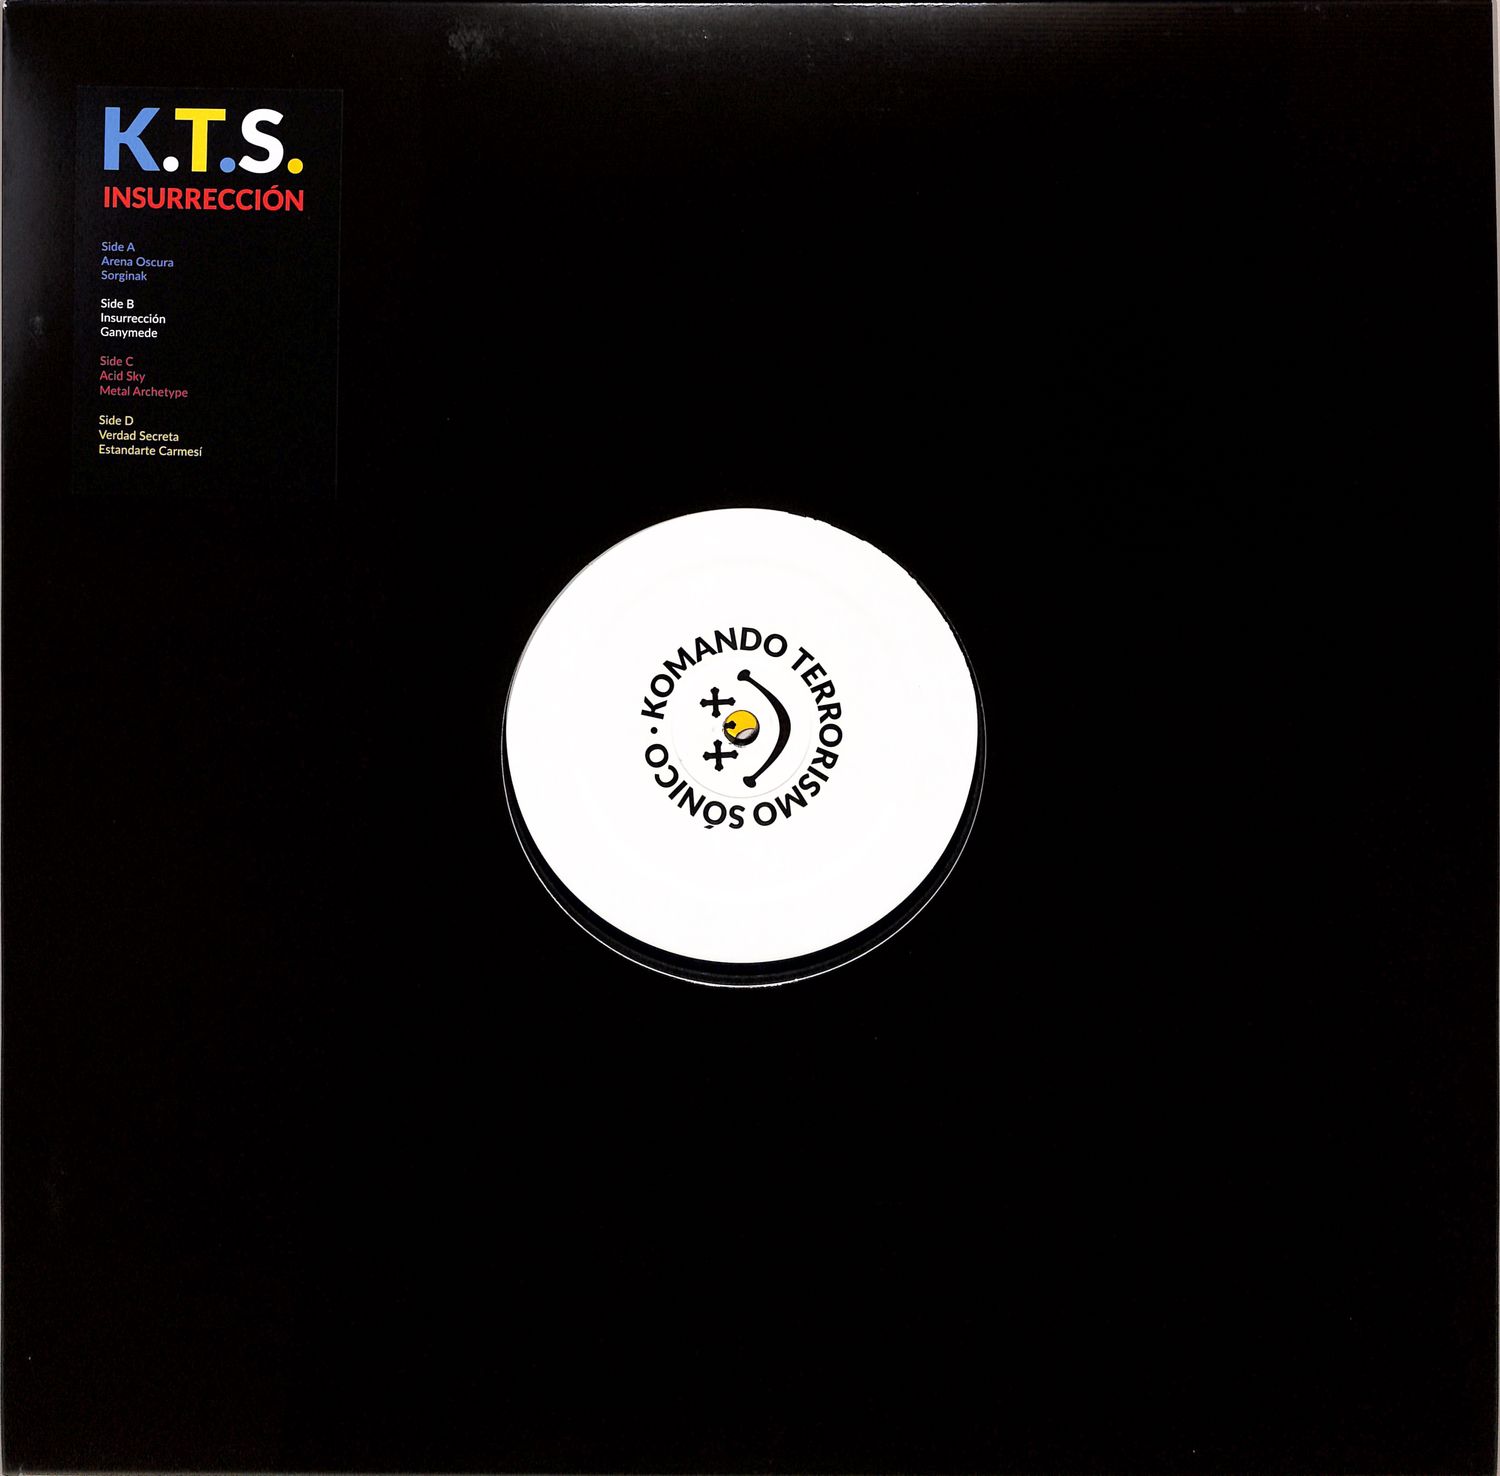 K.T.S. - INSURRECCION 